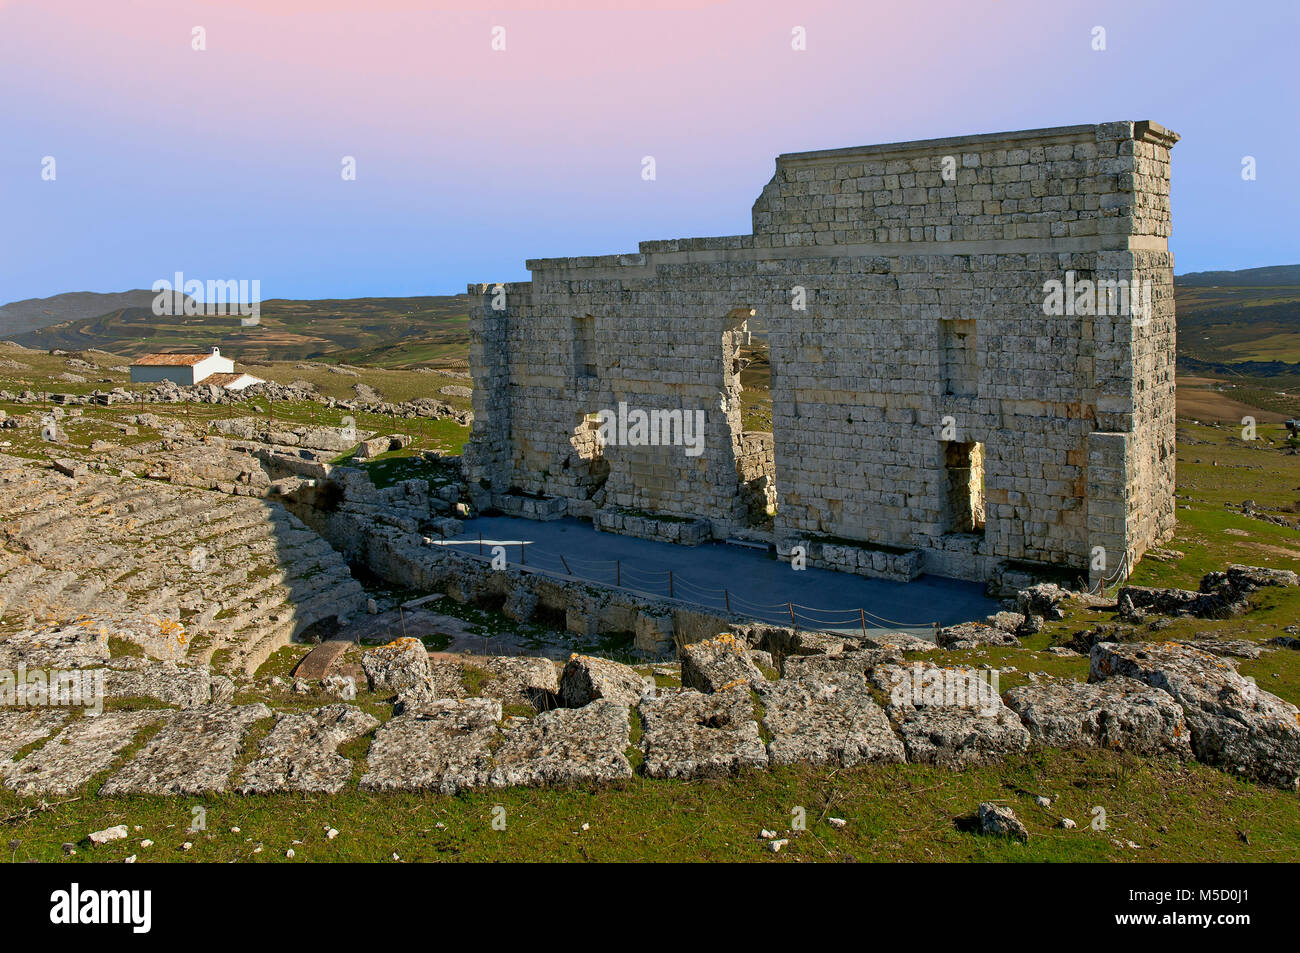 Teatro romano di Acinipo, Ronda, provincia di Malaga, regione dell'Andalusia, Spagna, Europa Foto Stock